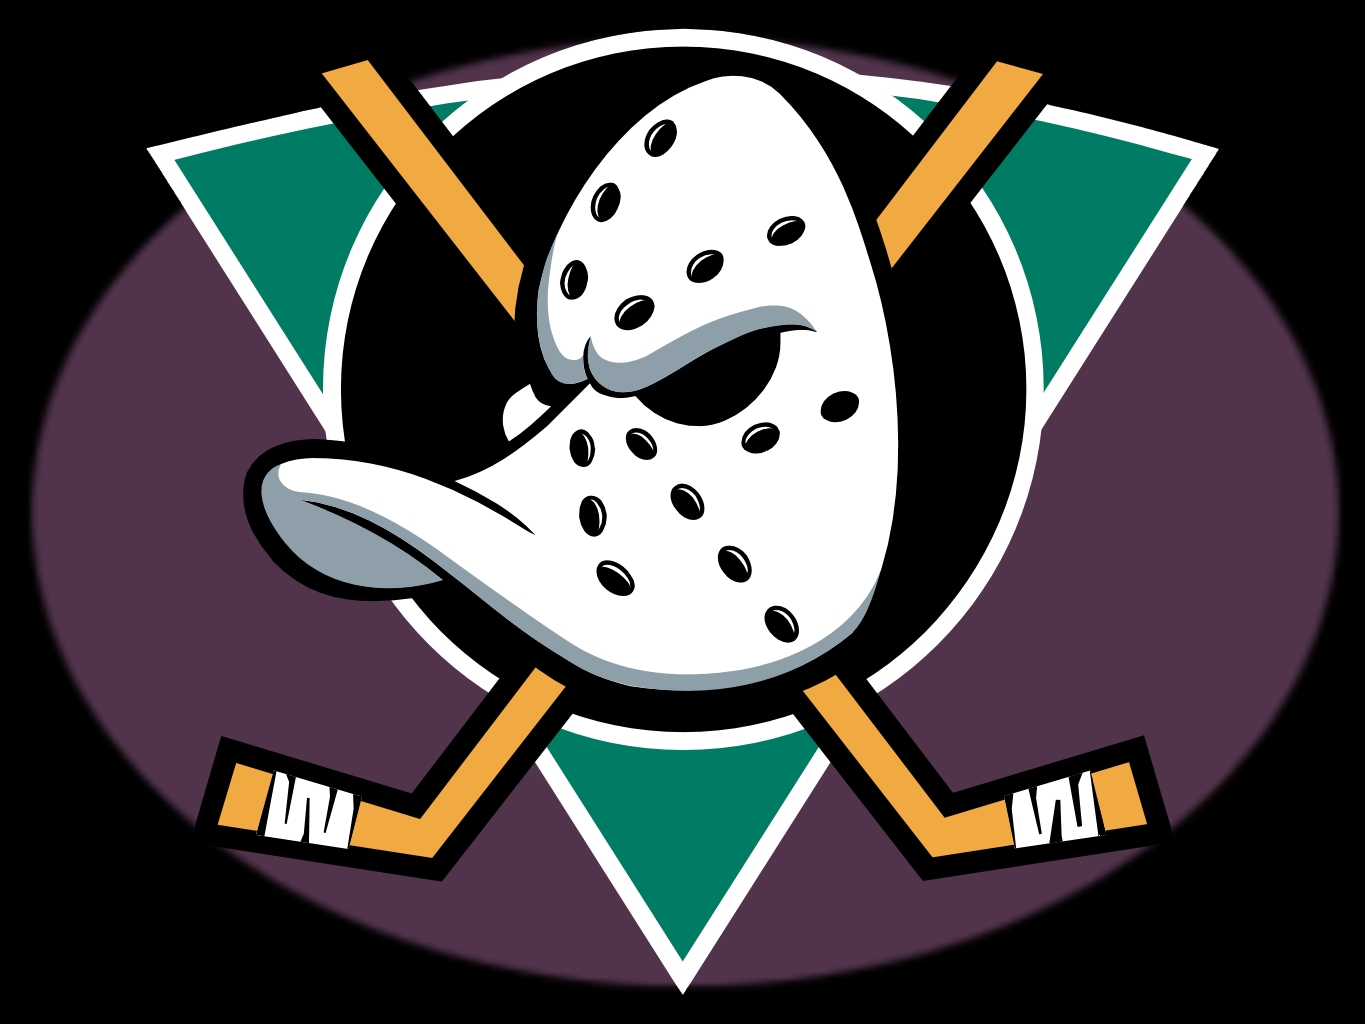 Anaheim Ducks Wallpaper Background